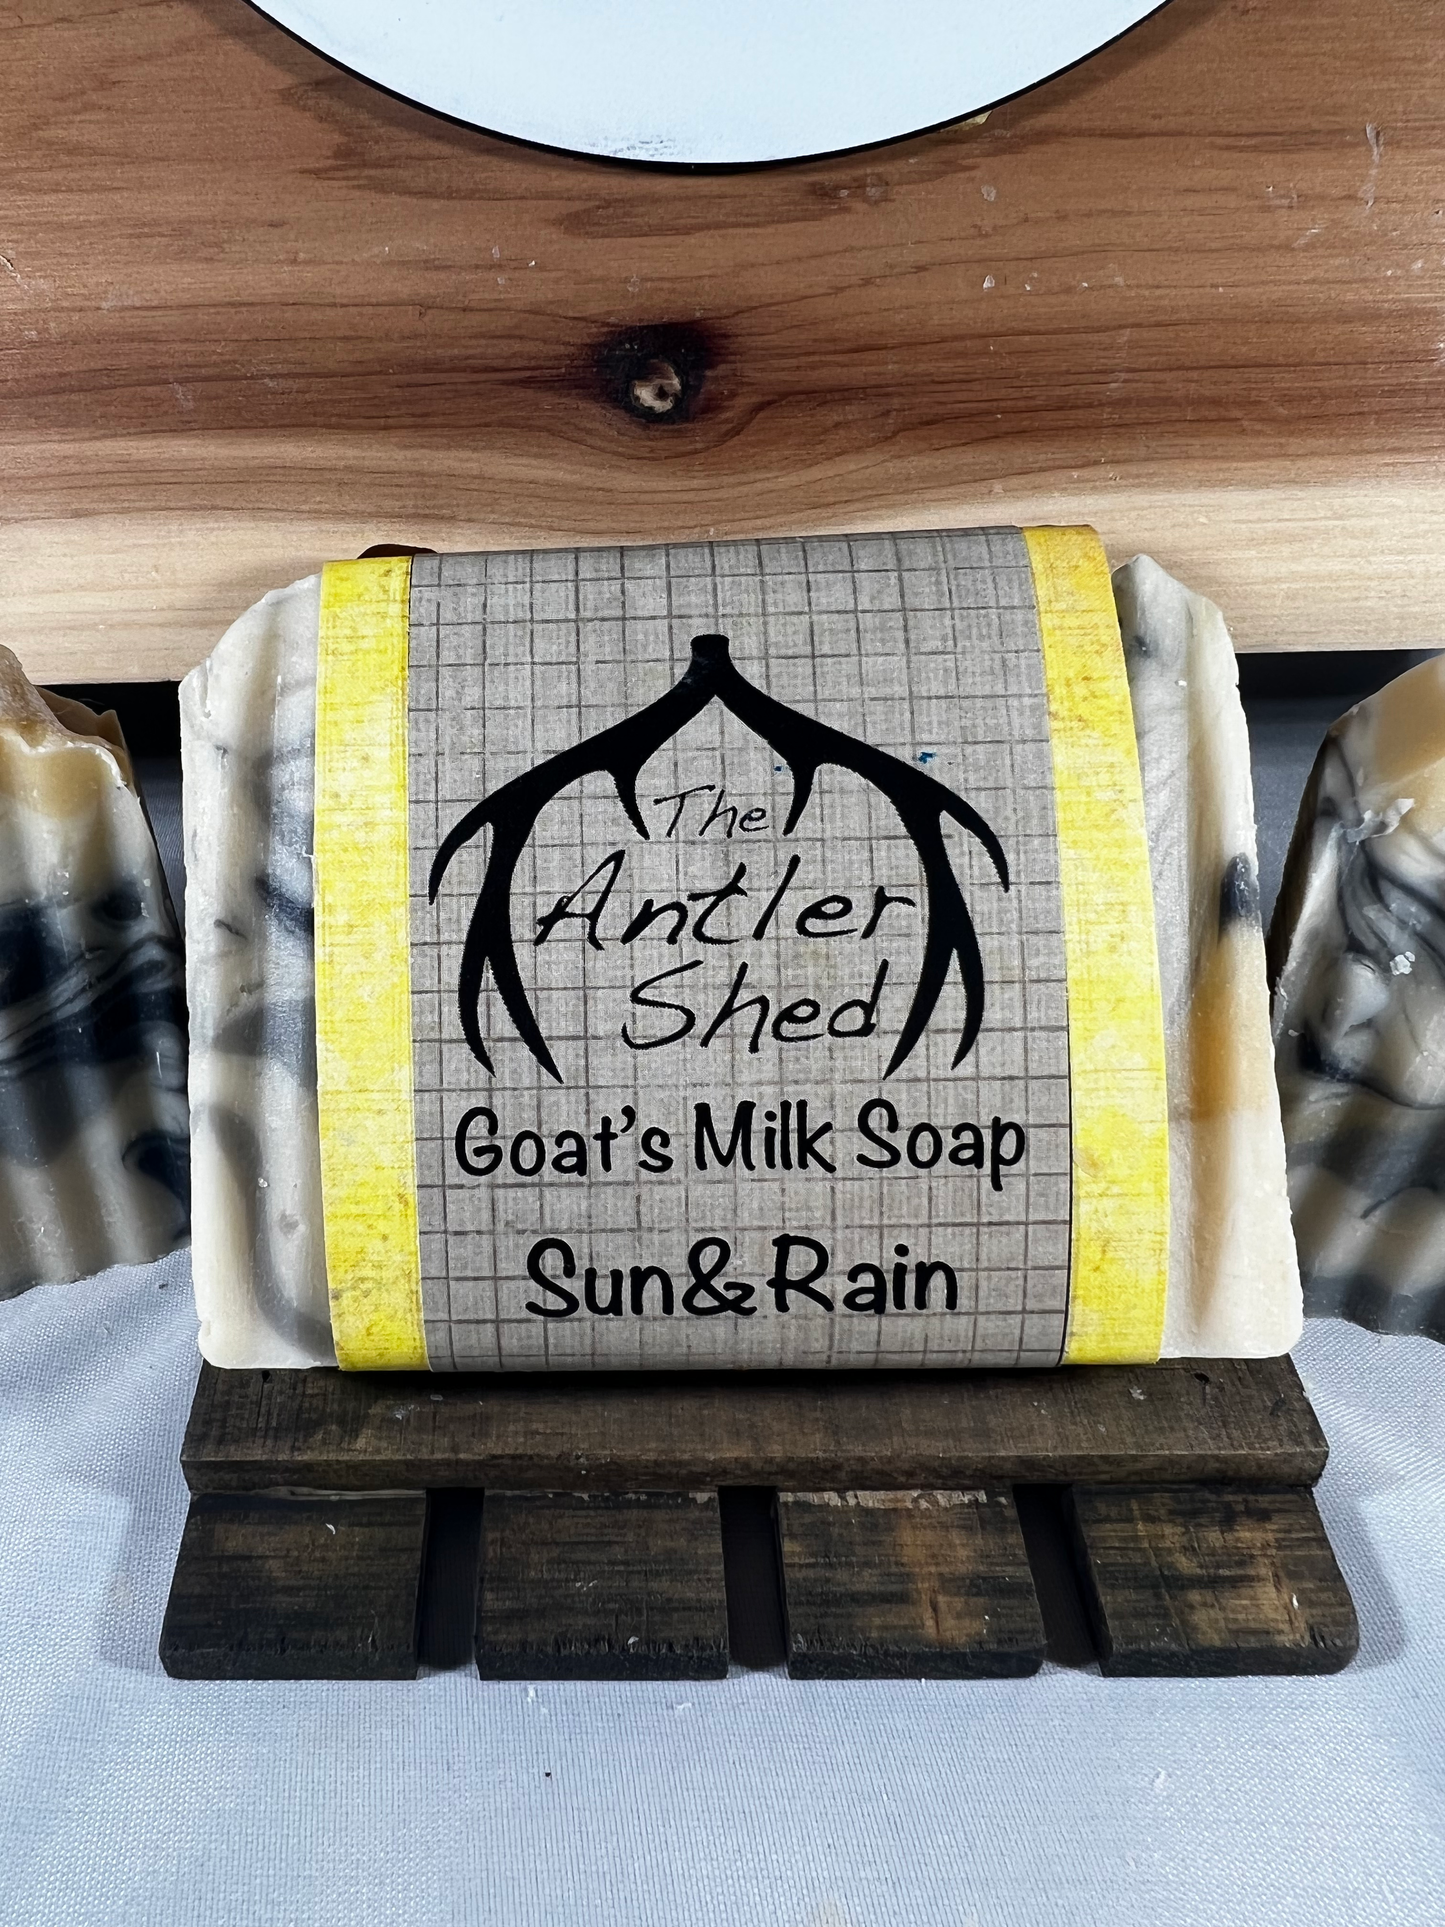 Sun and Rain Goats Milk Soap